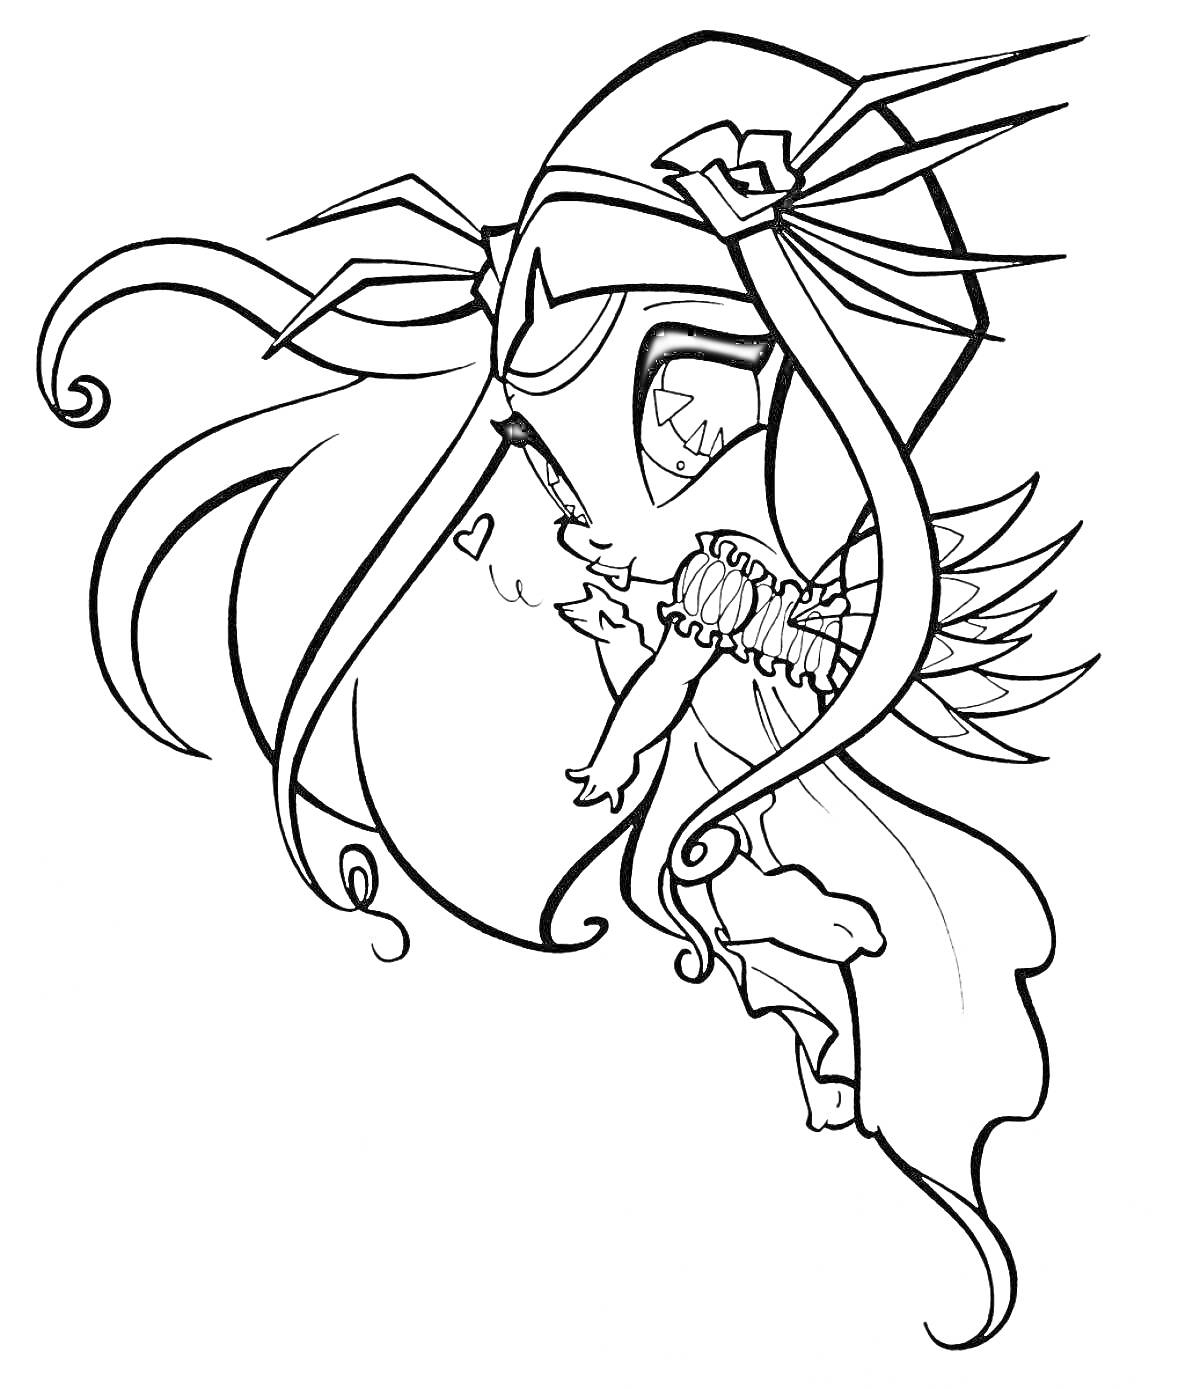 Пикси Винкс в полете с украшением на голове, распущенными волосами, крыльями и длинным платьем